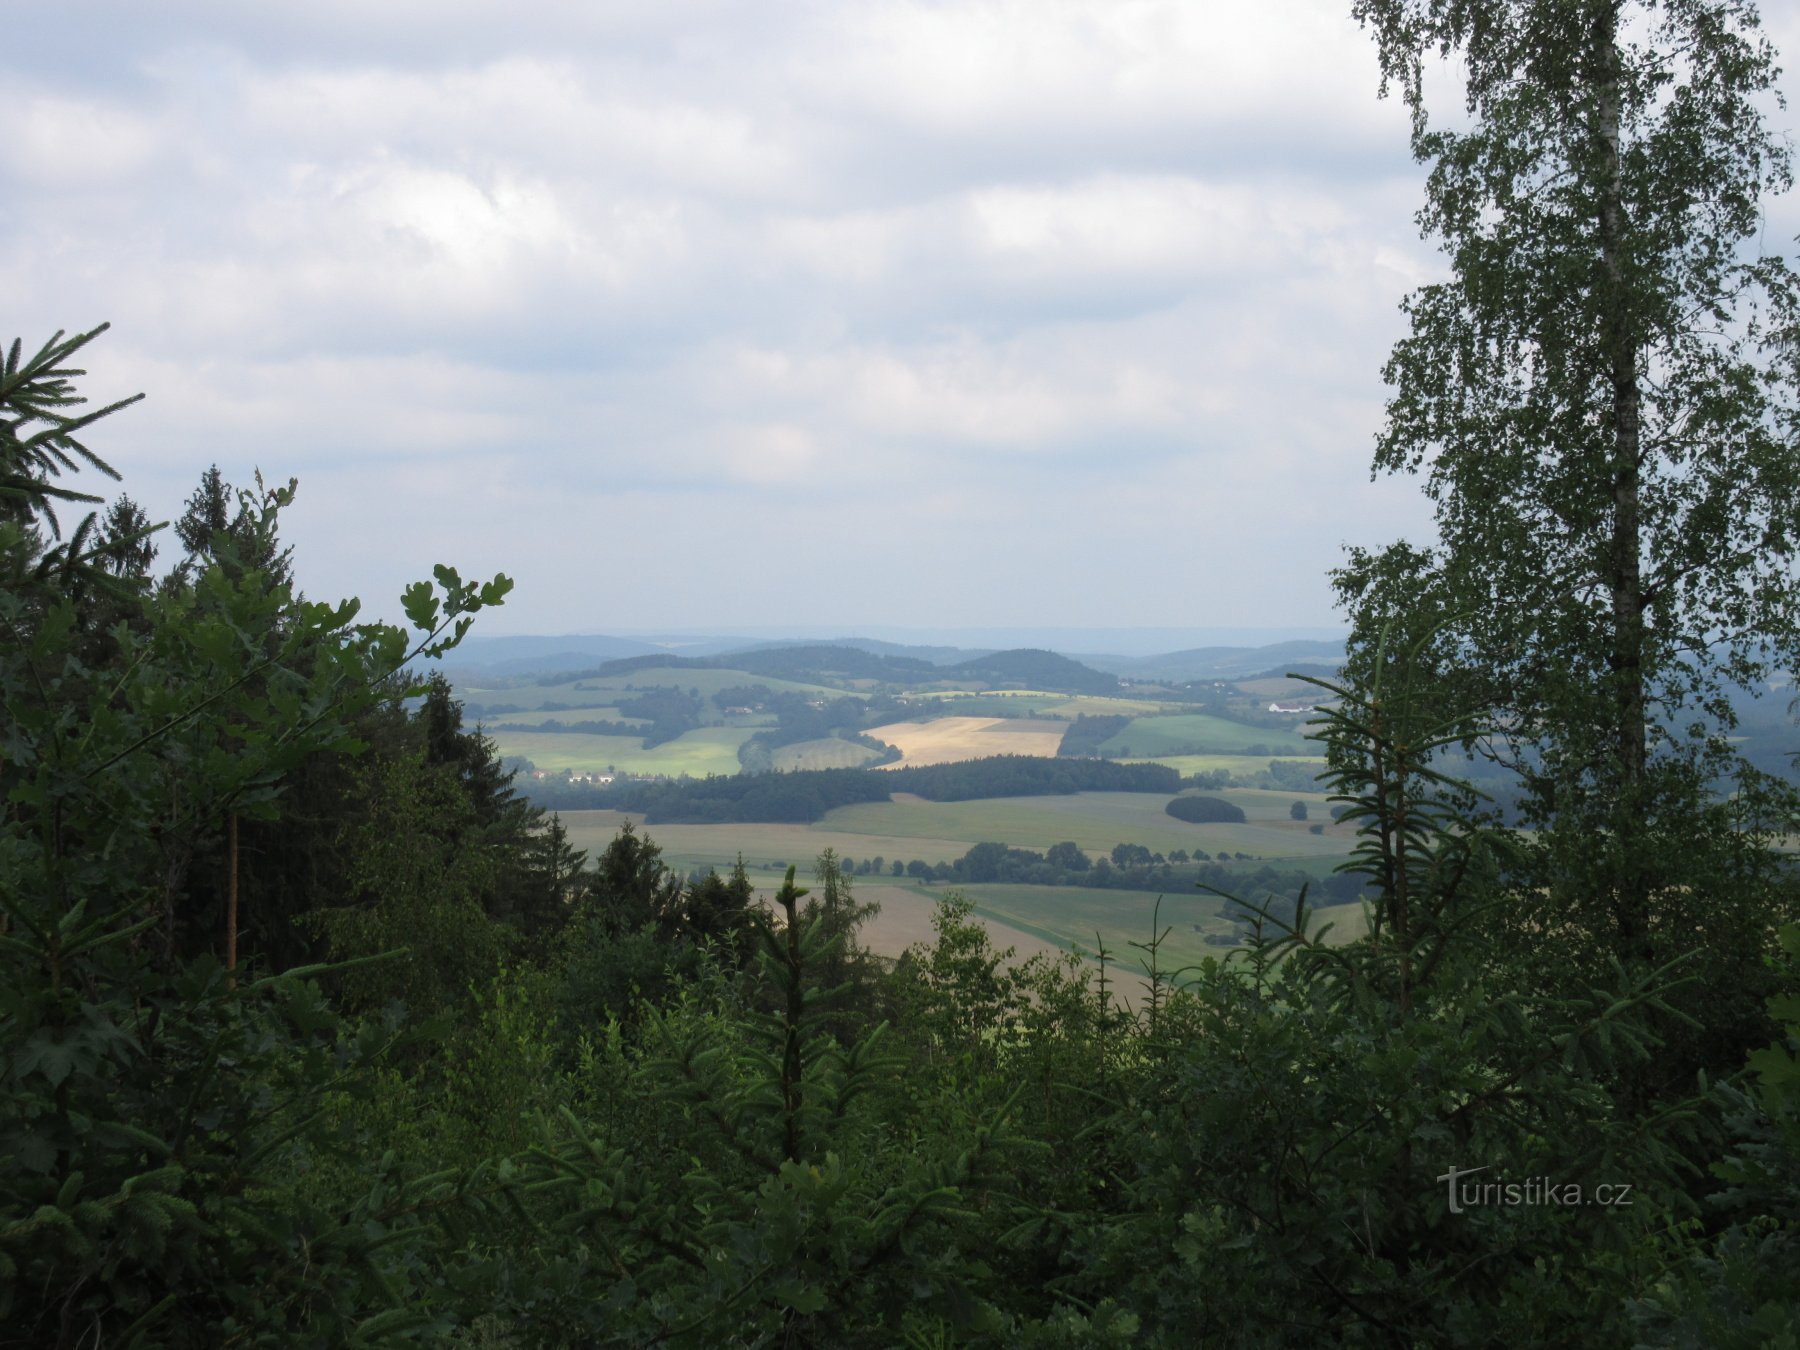 La vista desde la torre de observación Drahousek